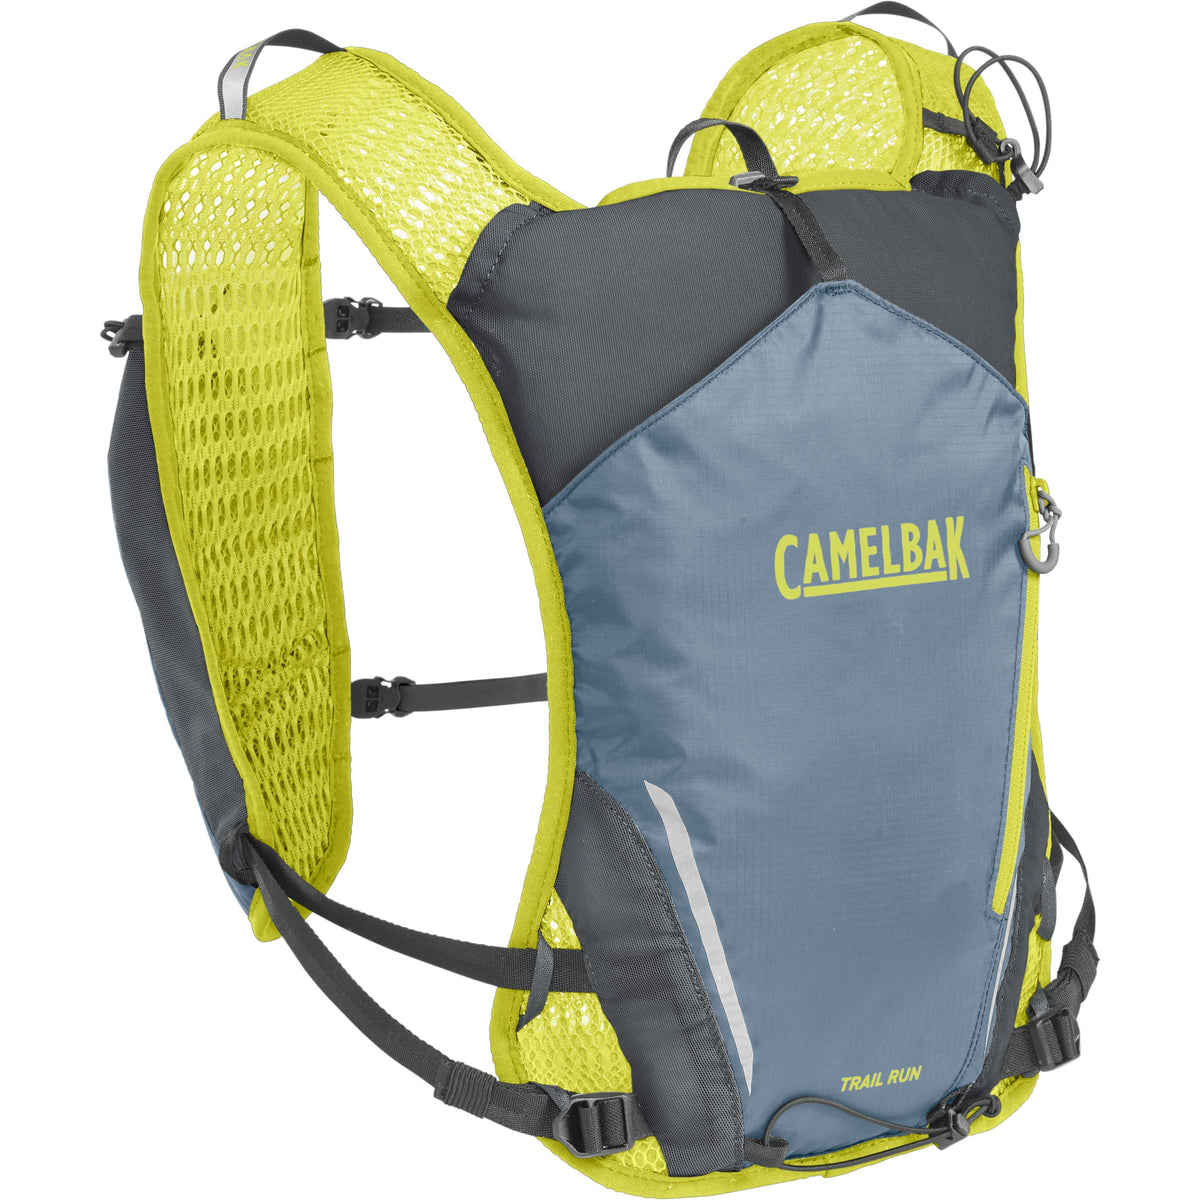 Camelbak Women's Trail Run Vest